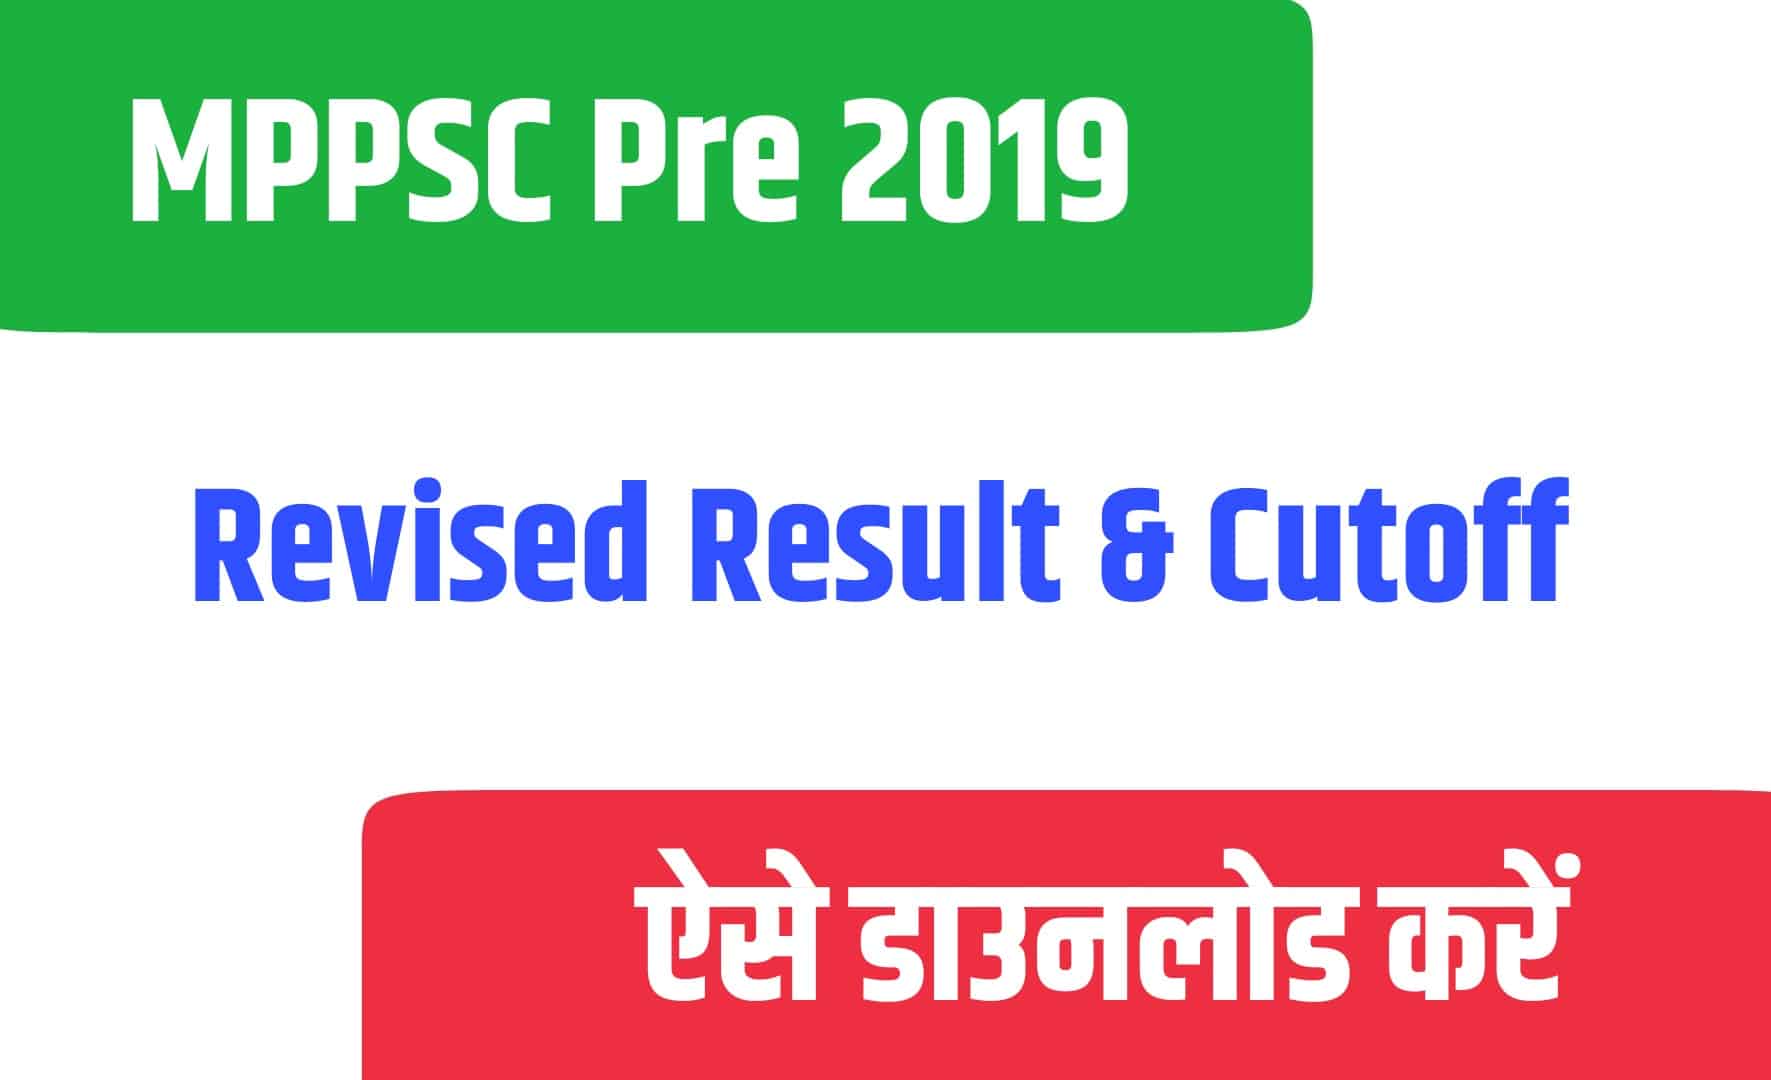 MPPSC Pre 2019 Revised Result & Cutoff | एमपीपीएससी प्री रिवाइज्ड रिजल्ट कटऑफ जारी